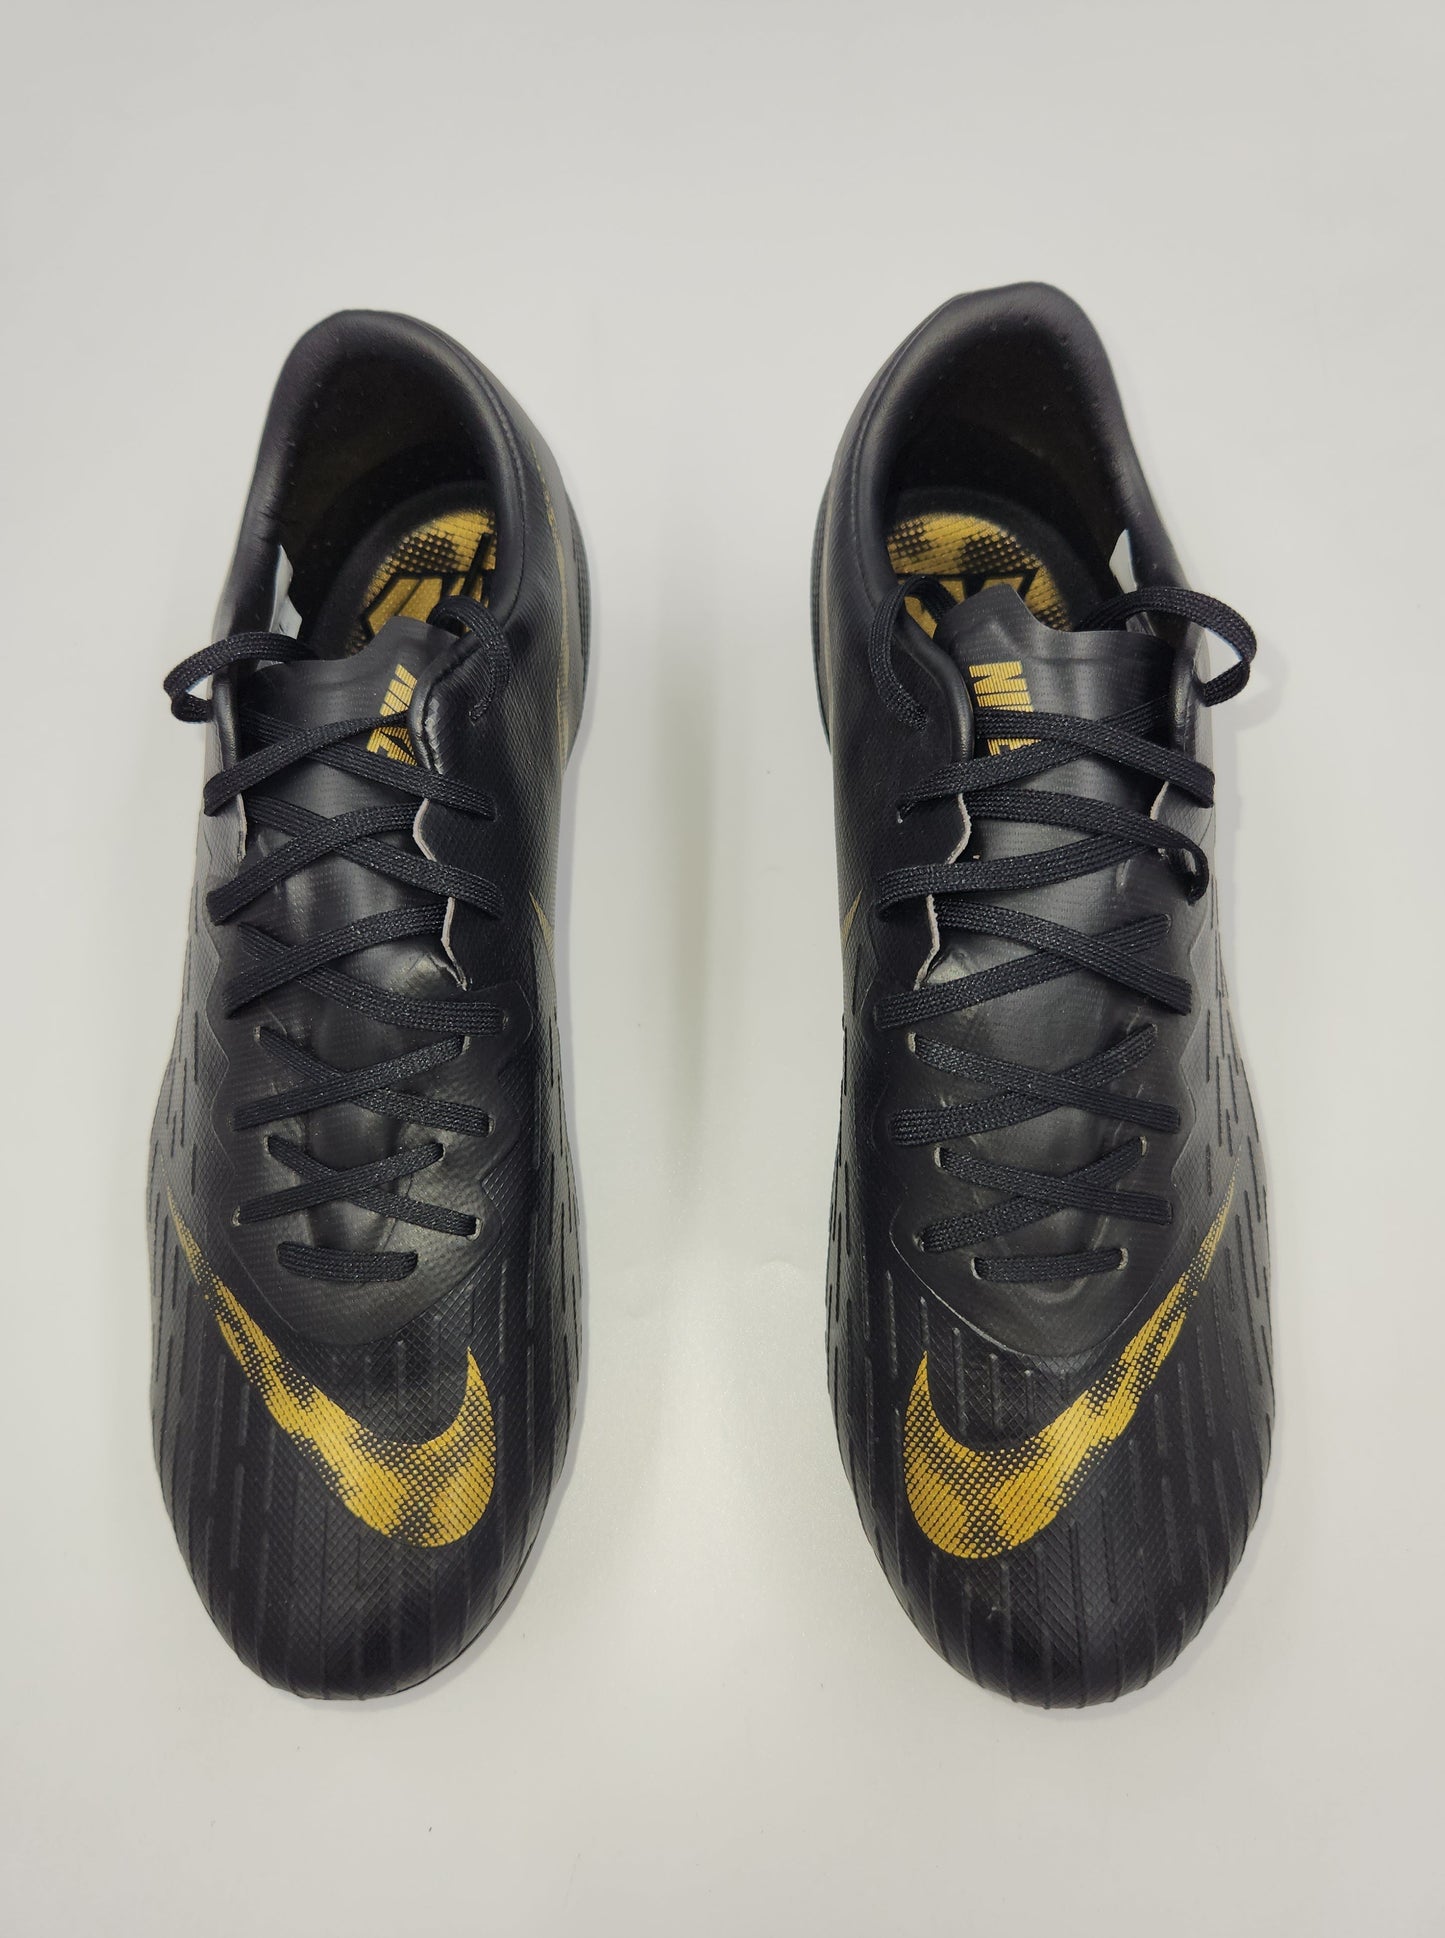 Nike Vapor 12 Pro FG Black Gold